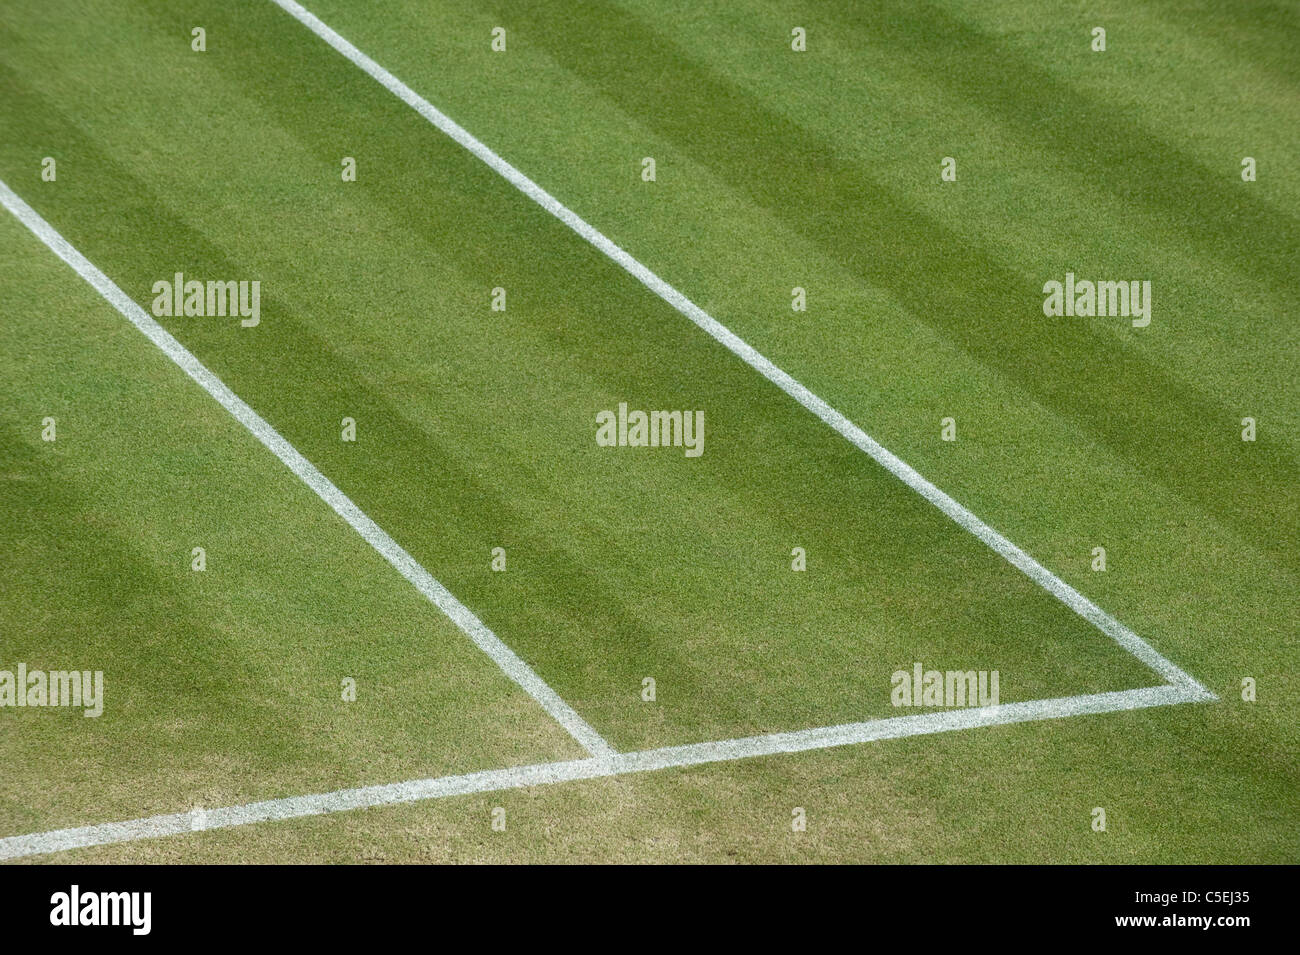 Détail de l'herbe et des lignes sur une cour à l'extérieur pendant l'édition 2011 des Championnats de tennis de Wimbledon Banque D'Images